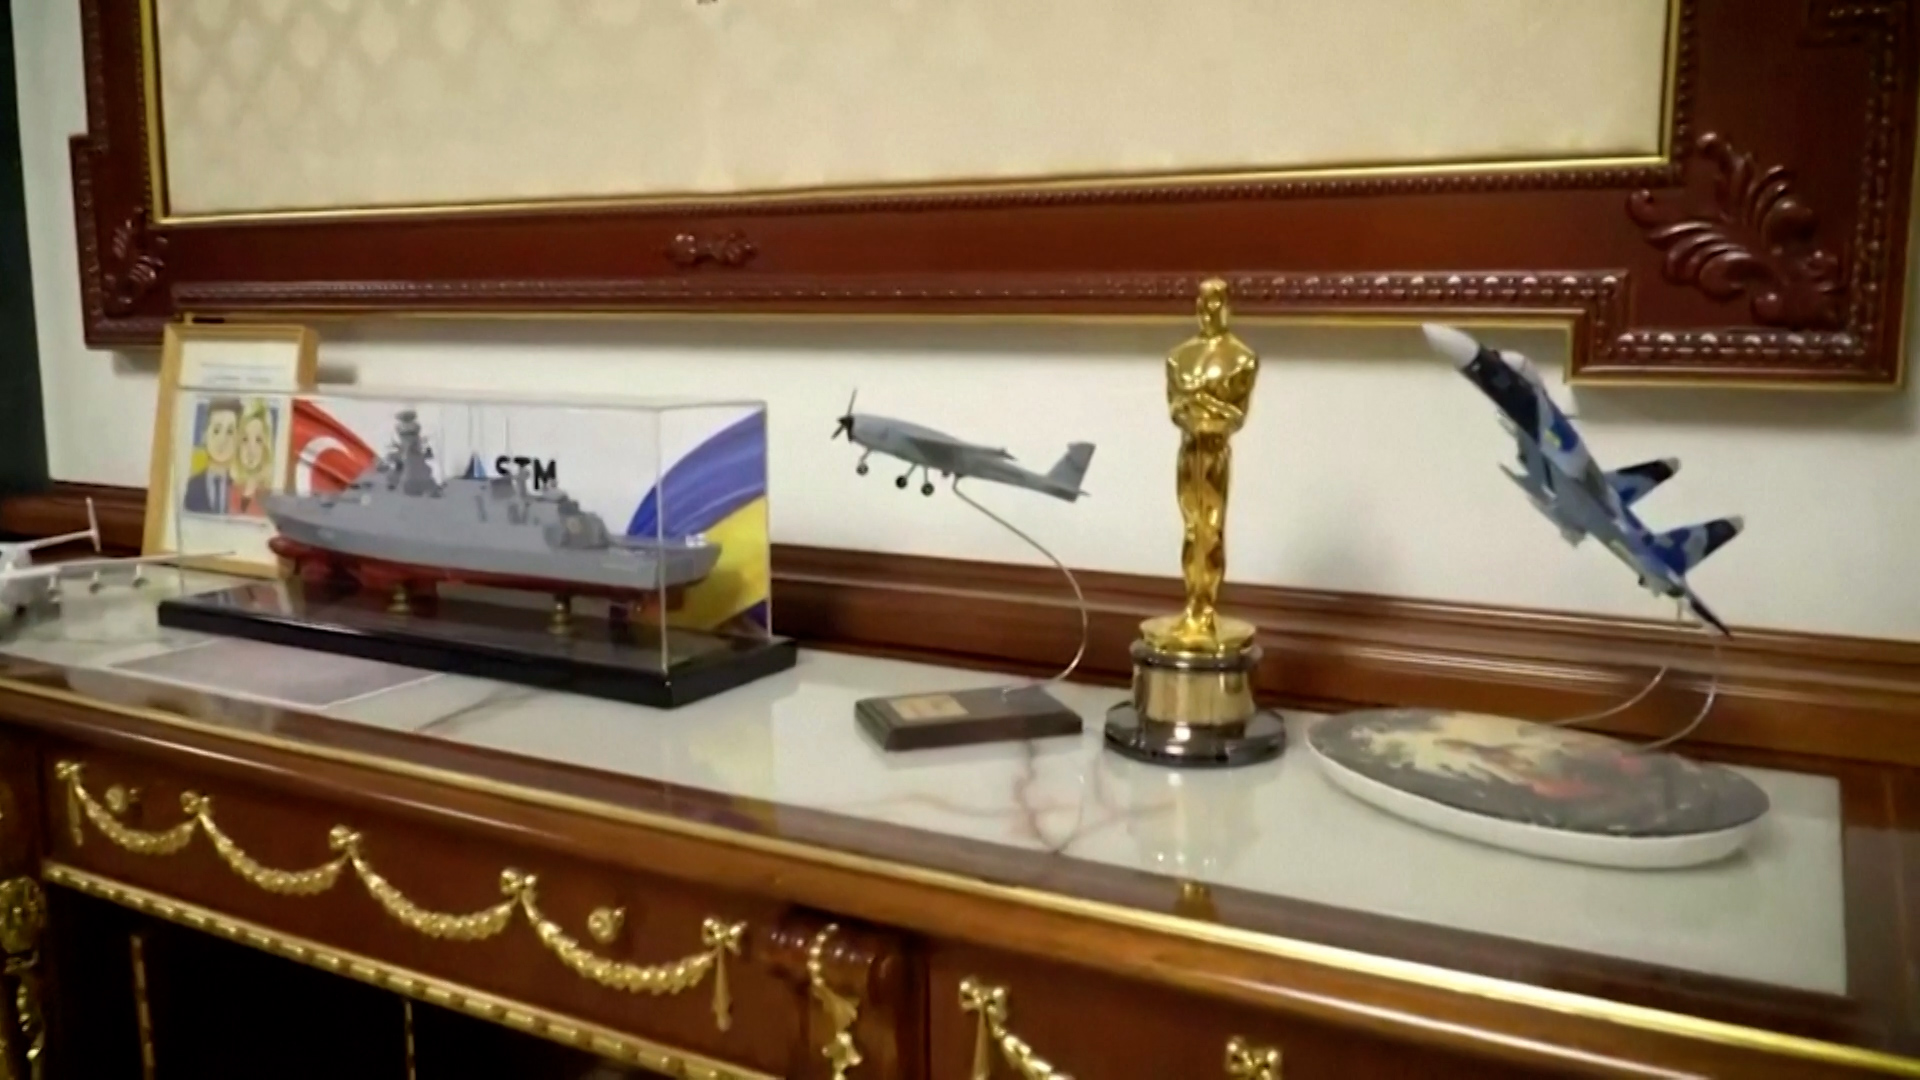 El Oscar fue ubicado junto a otros objetos en el despacho de Zelensky